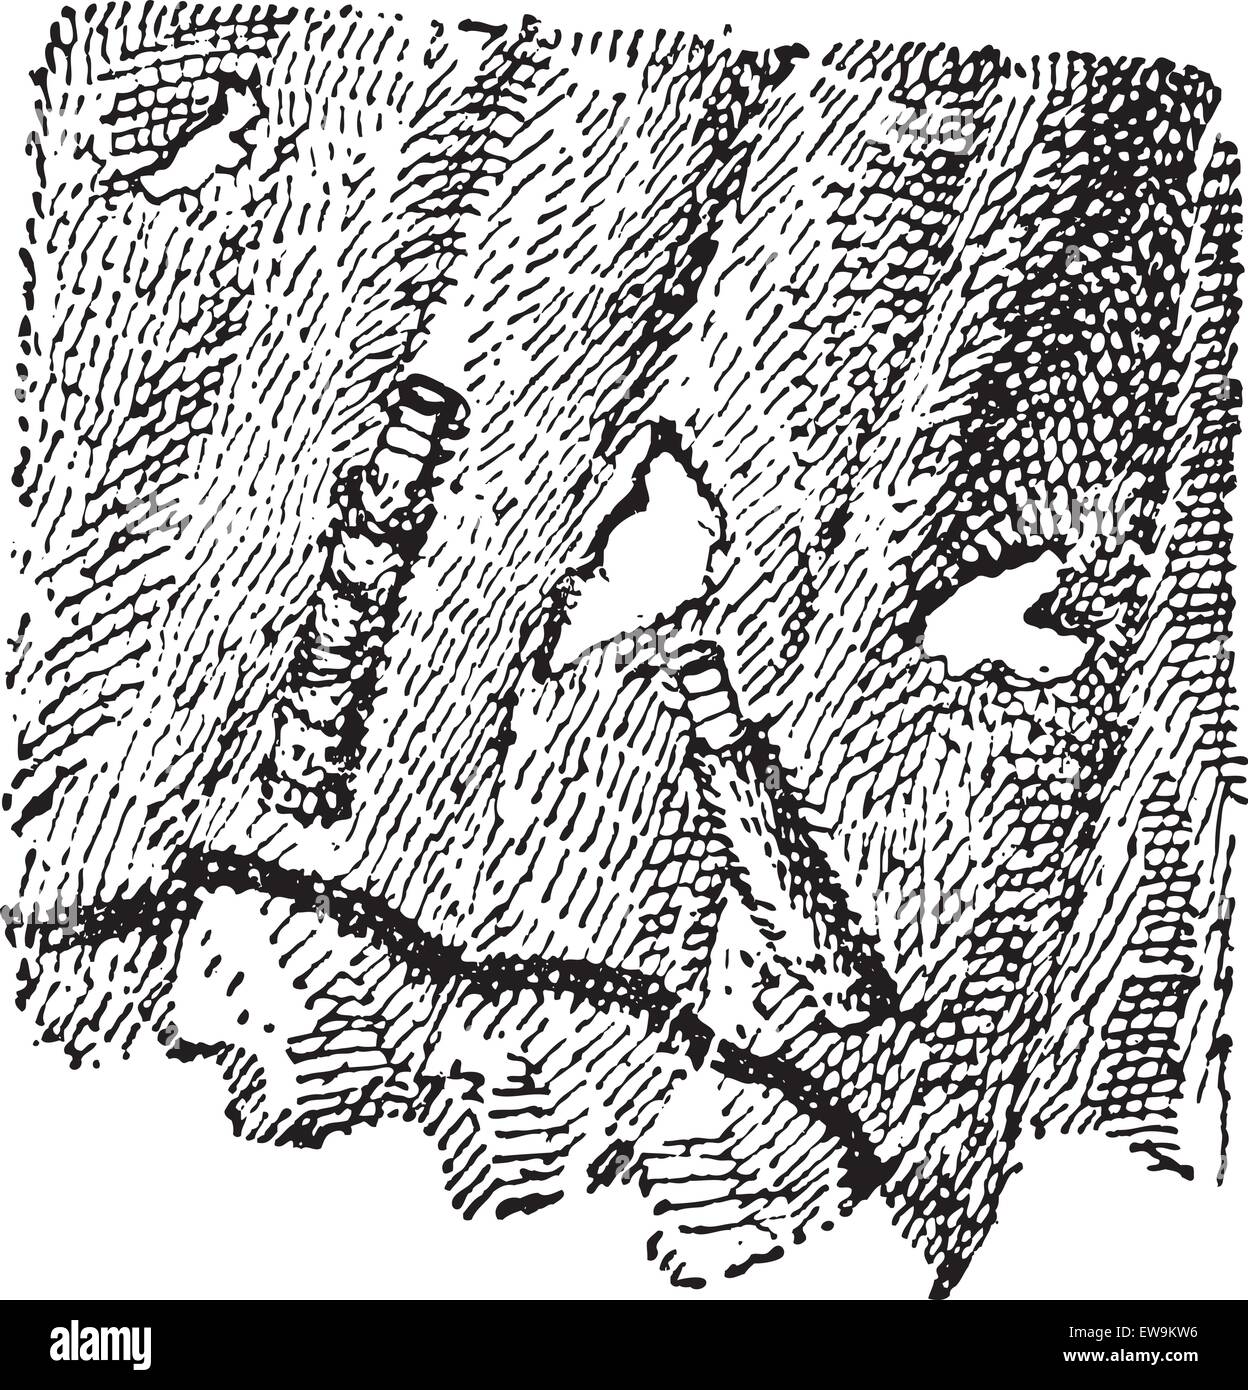 Le larve della falena fungo o Tinea sp., vintage illustrazioni incise. Dizionario di parole e le cose - Larive e Fleury - 1895 Illustrazione Vettoriale